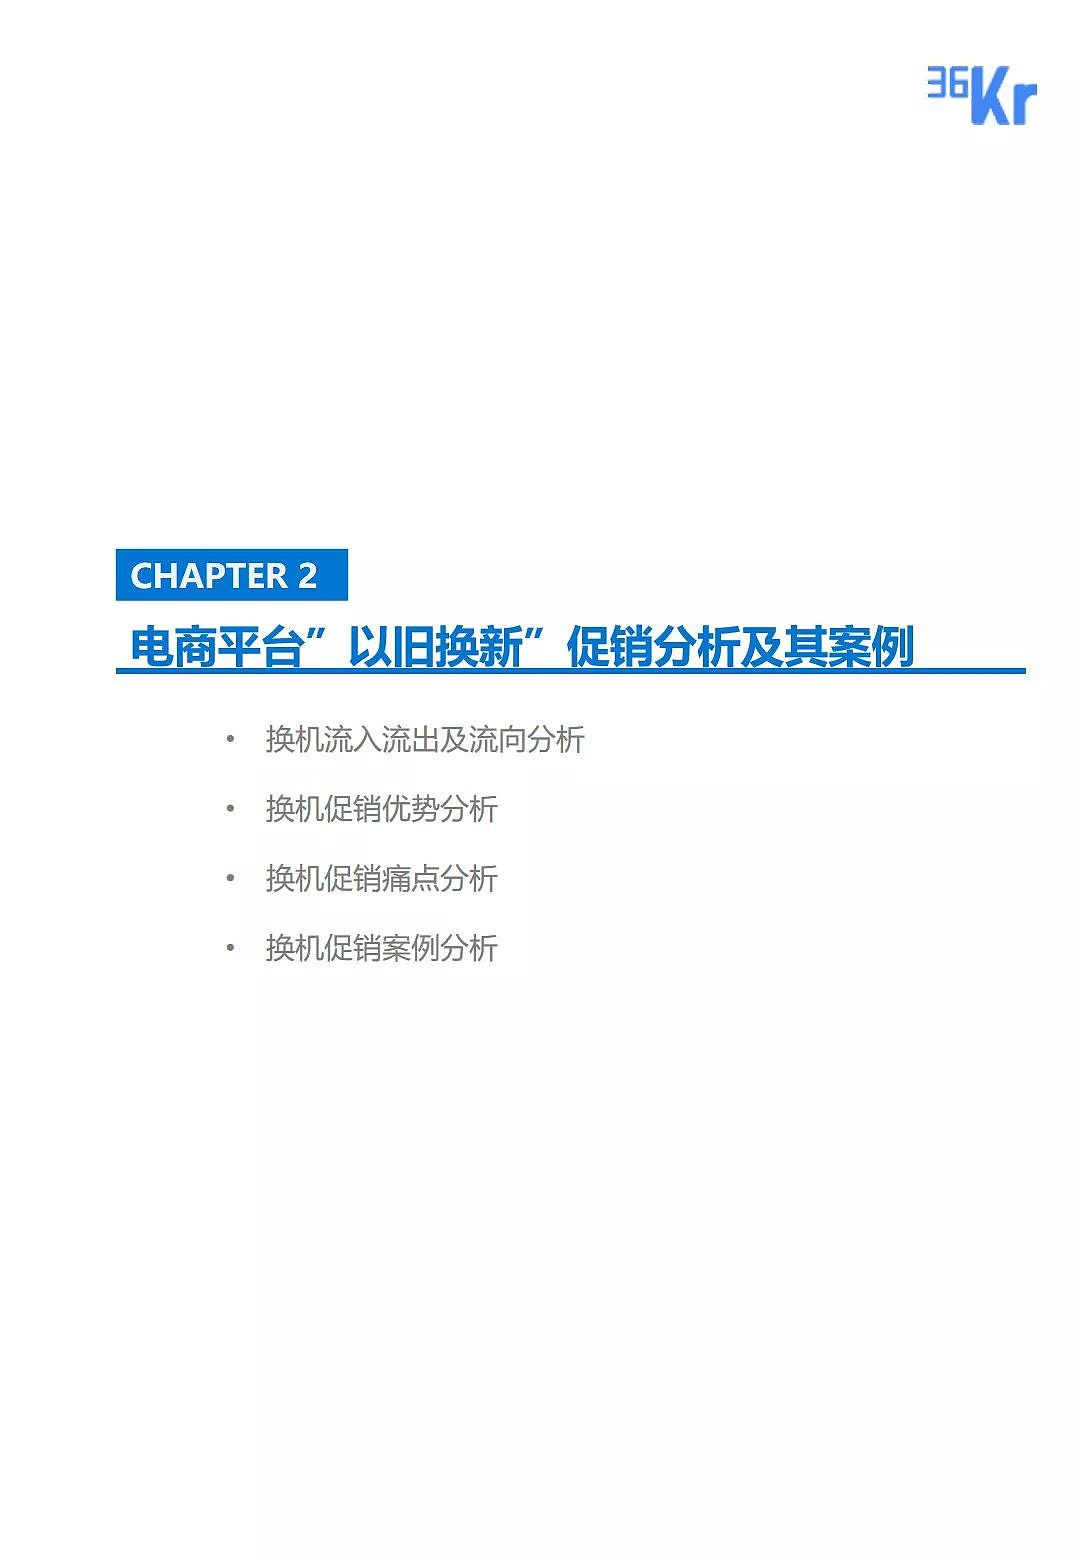 中国手机品牌市场营销研究报告 | 36氪研究 - 13